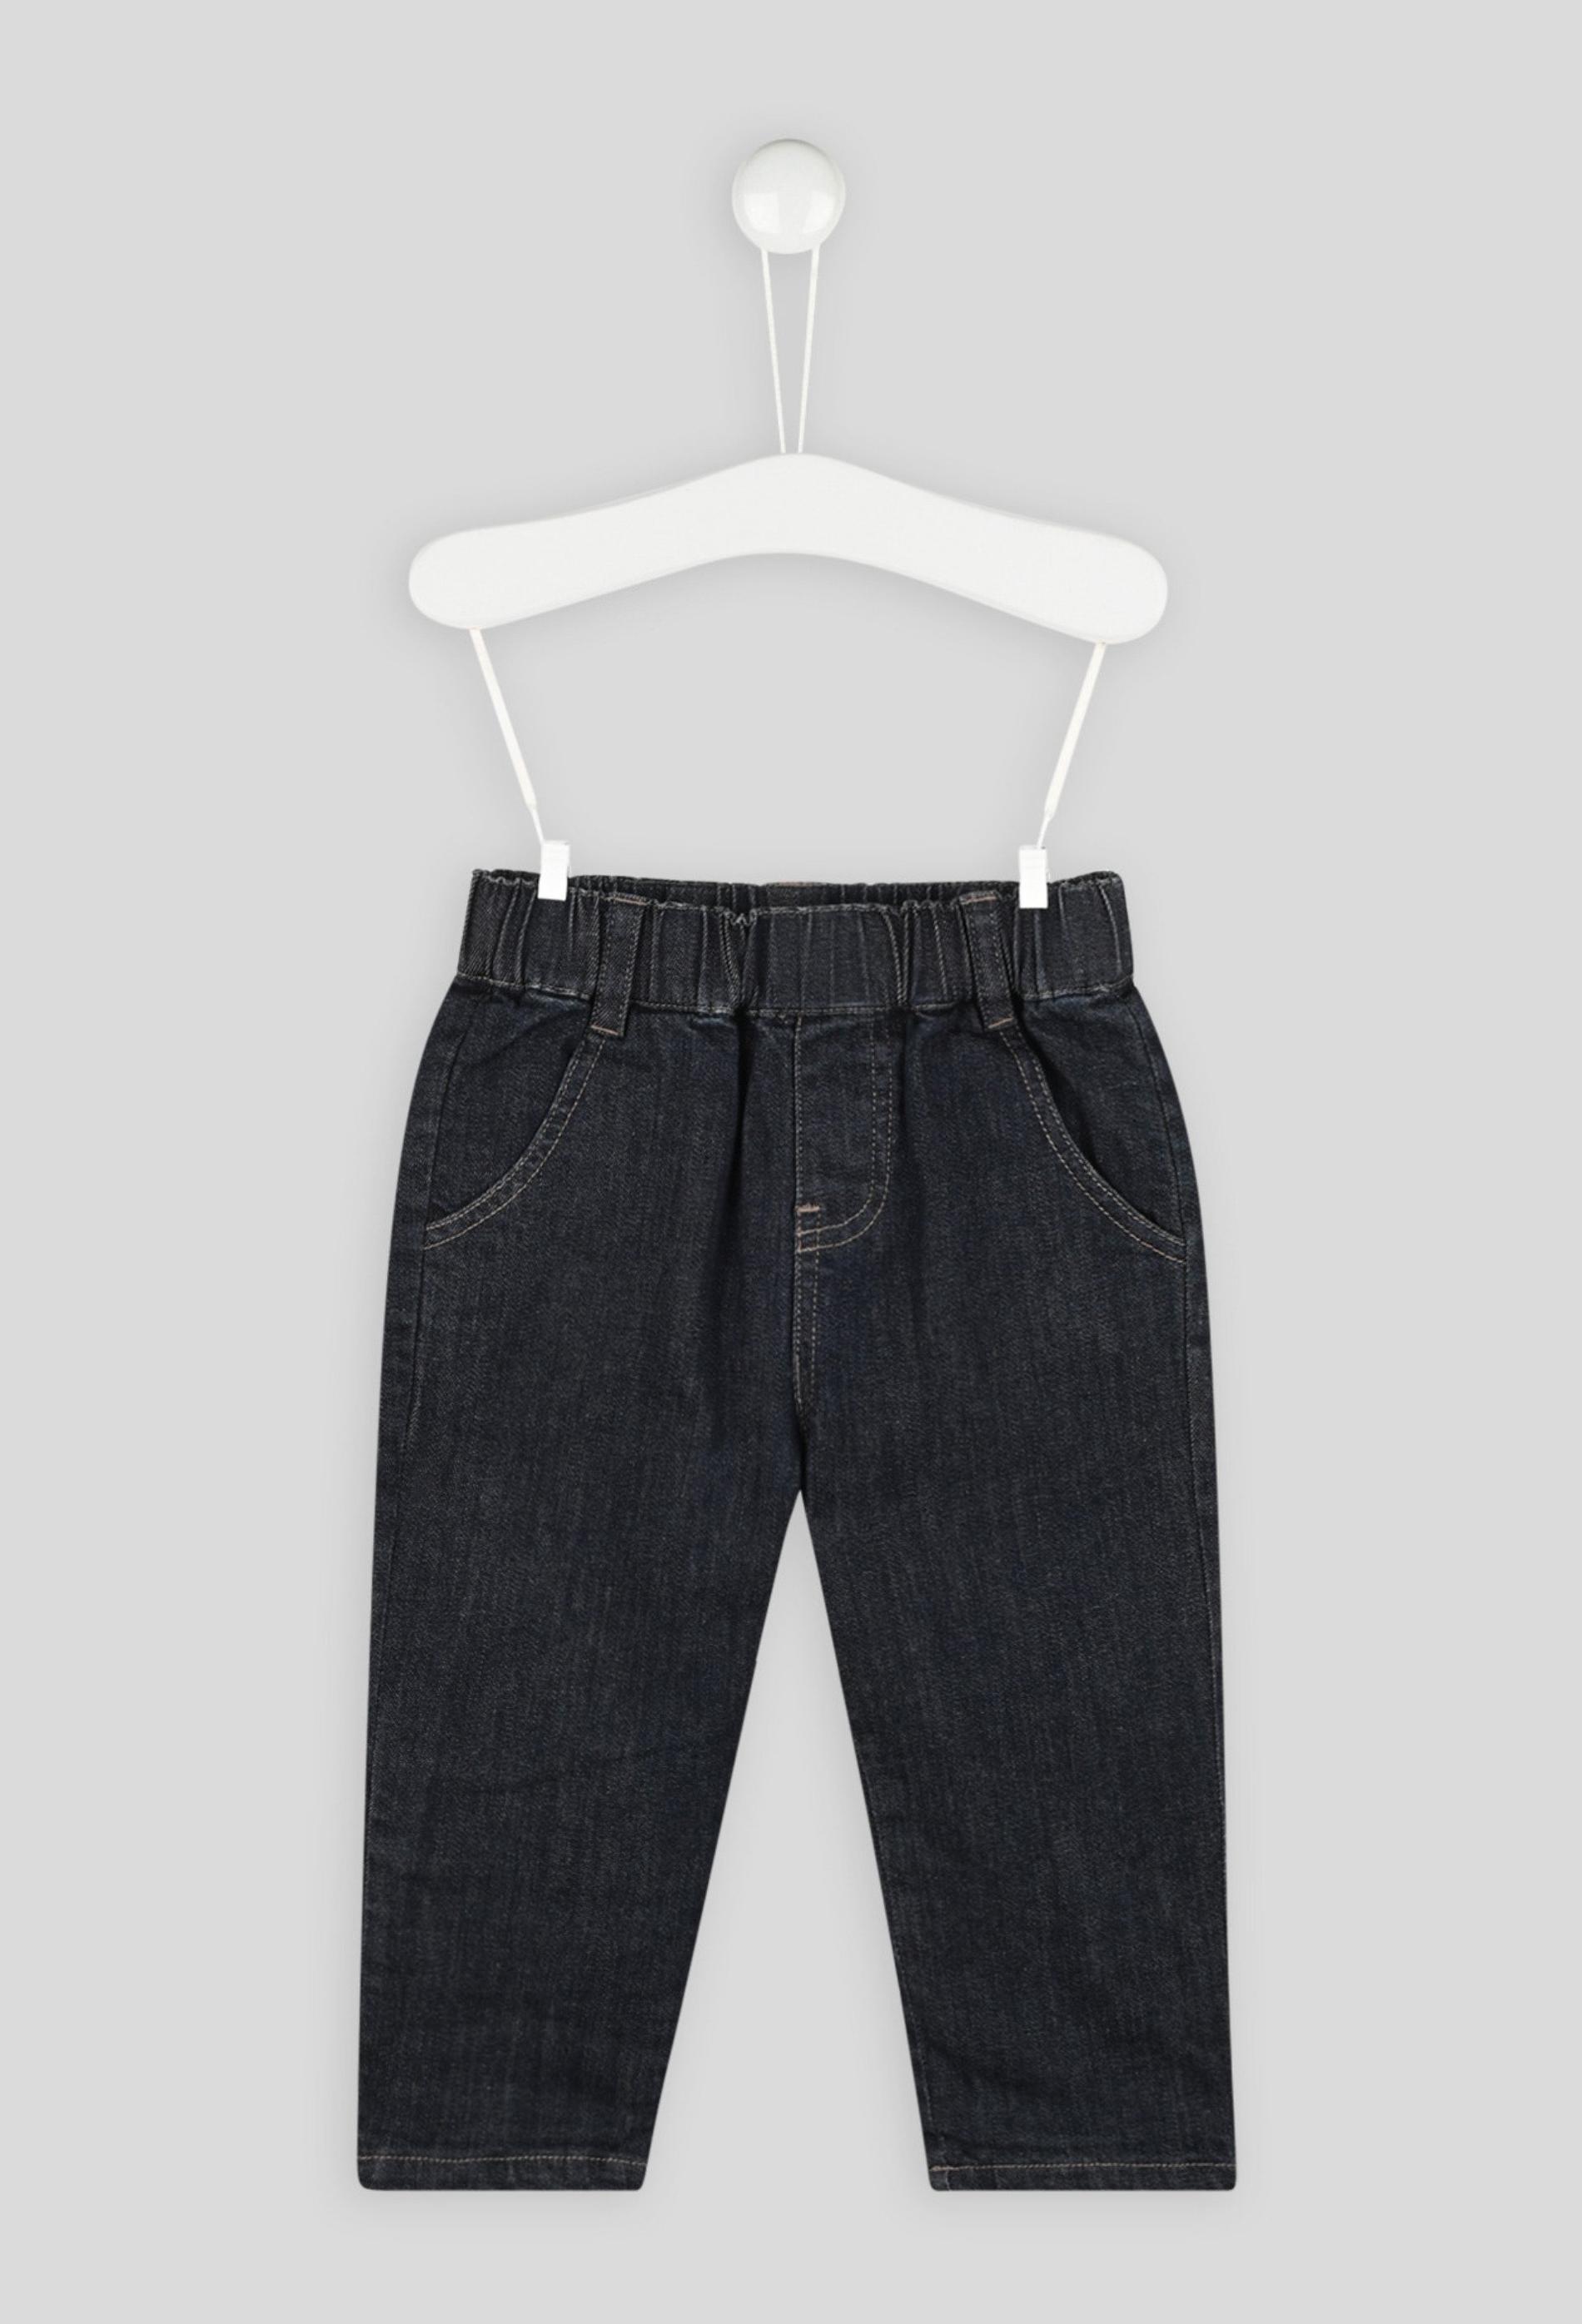 Pantalon uni taille élastique en denim, mixte, OEKO-TEX 9 mois bleu foncé